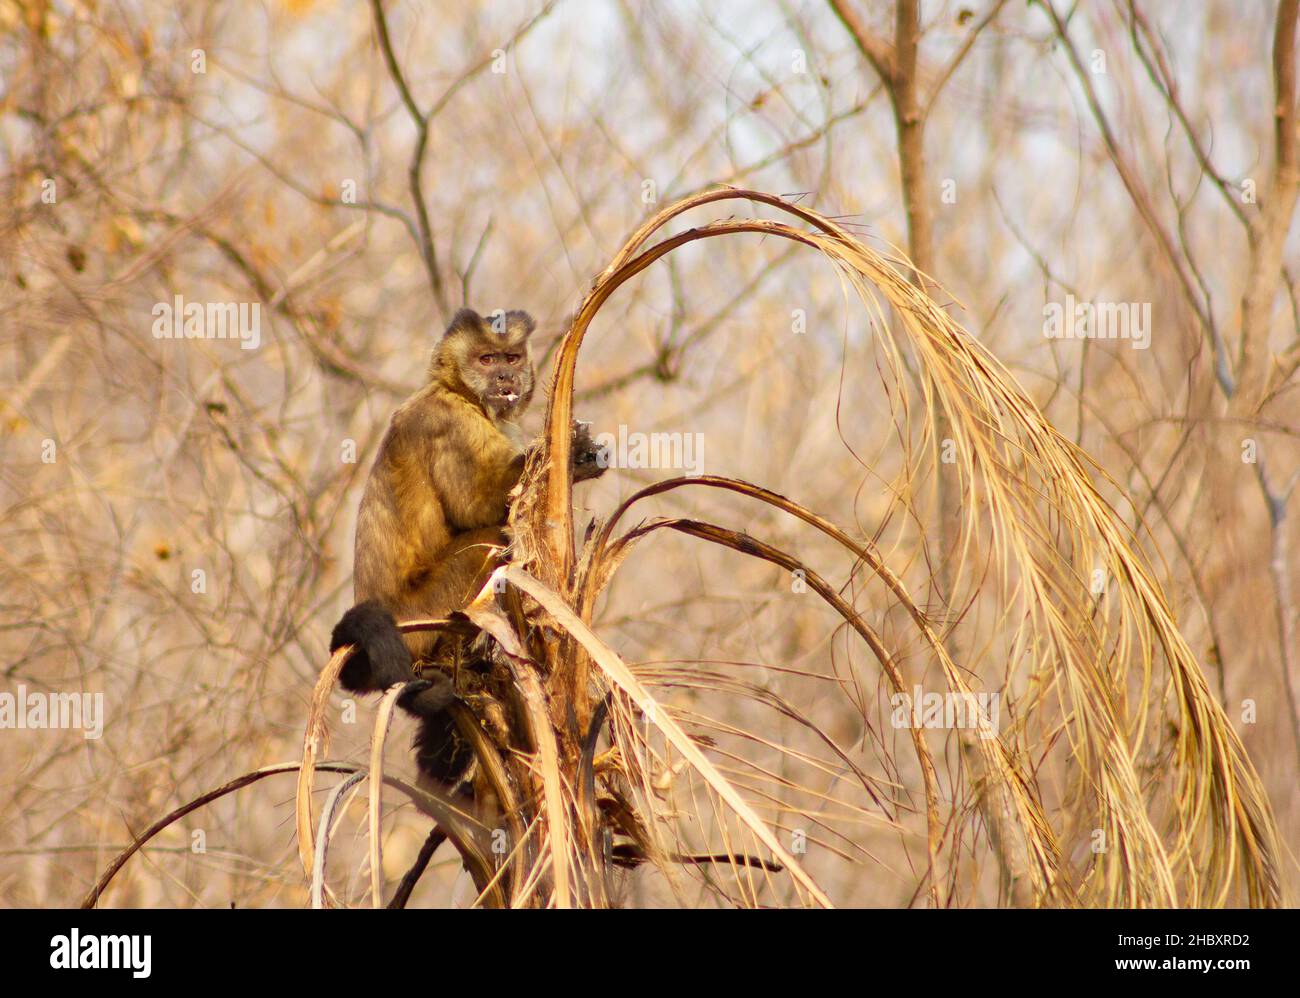 Macaco prego se alimentando de palmito pós-chamas no Pantanal. Foto de stock